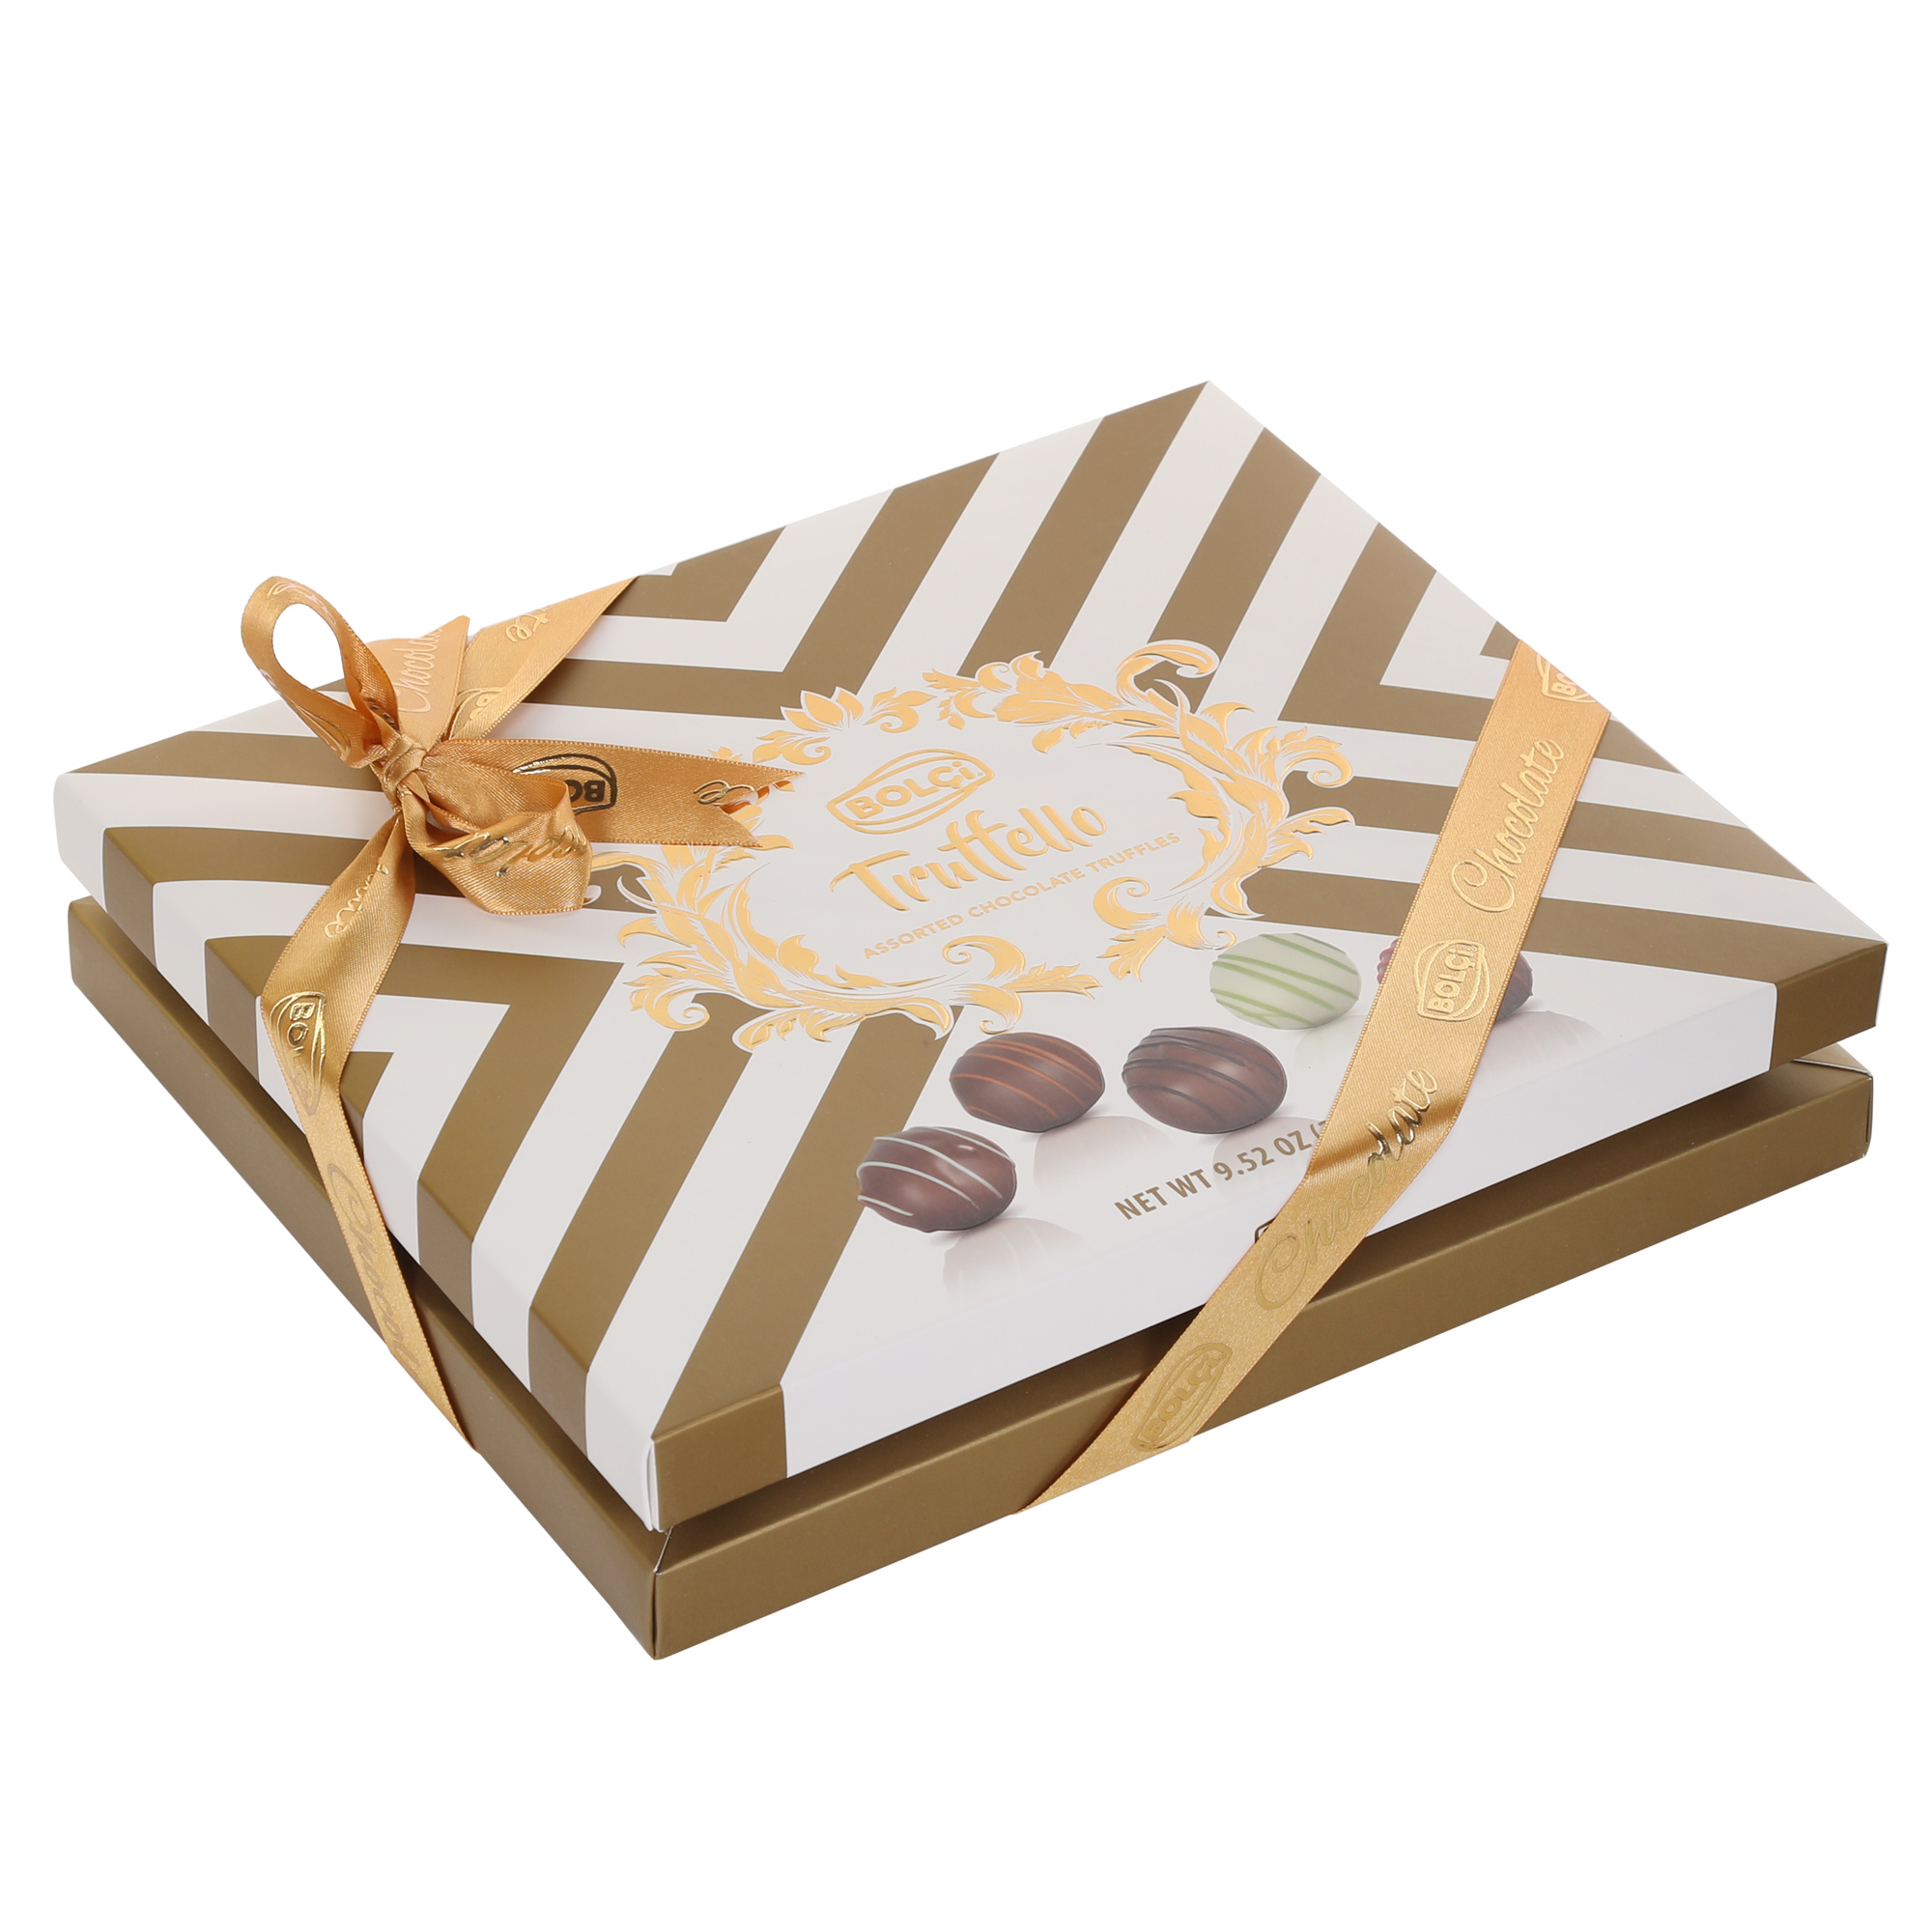 Набор шоколадных конфет Bolci Truffles 270 г коробка под 8 конфет шоколад с окном карнавал 17 7 х 17 85 х 3 85 см